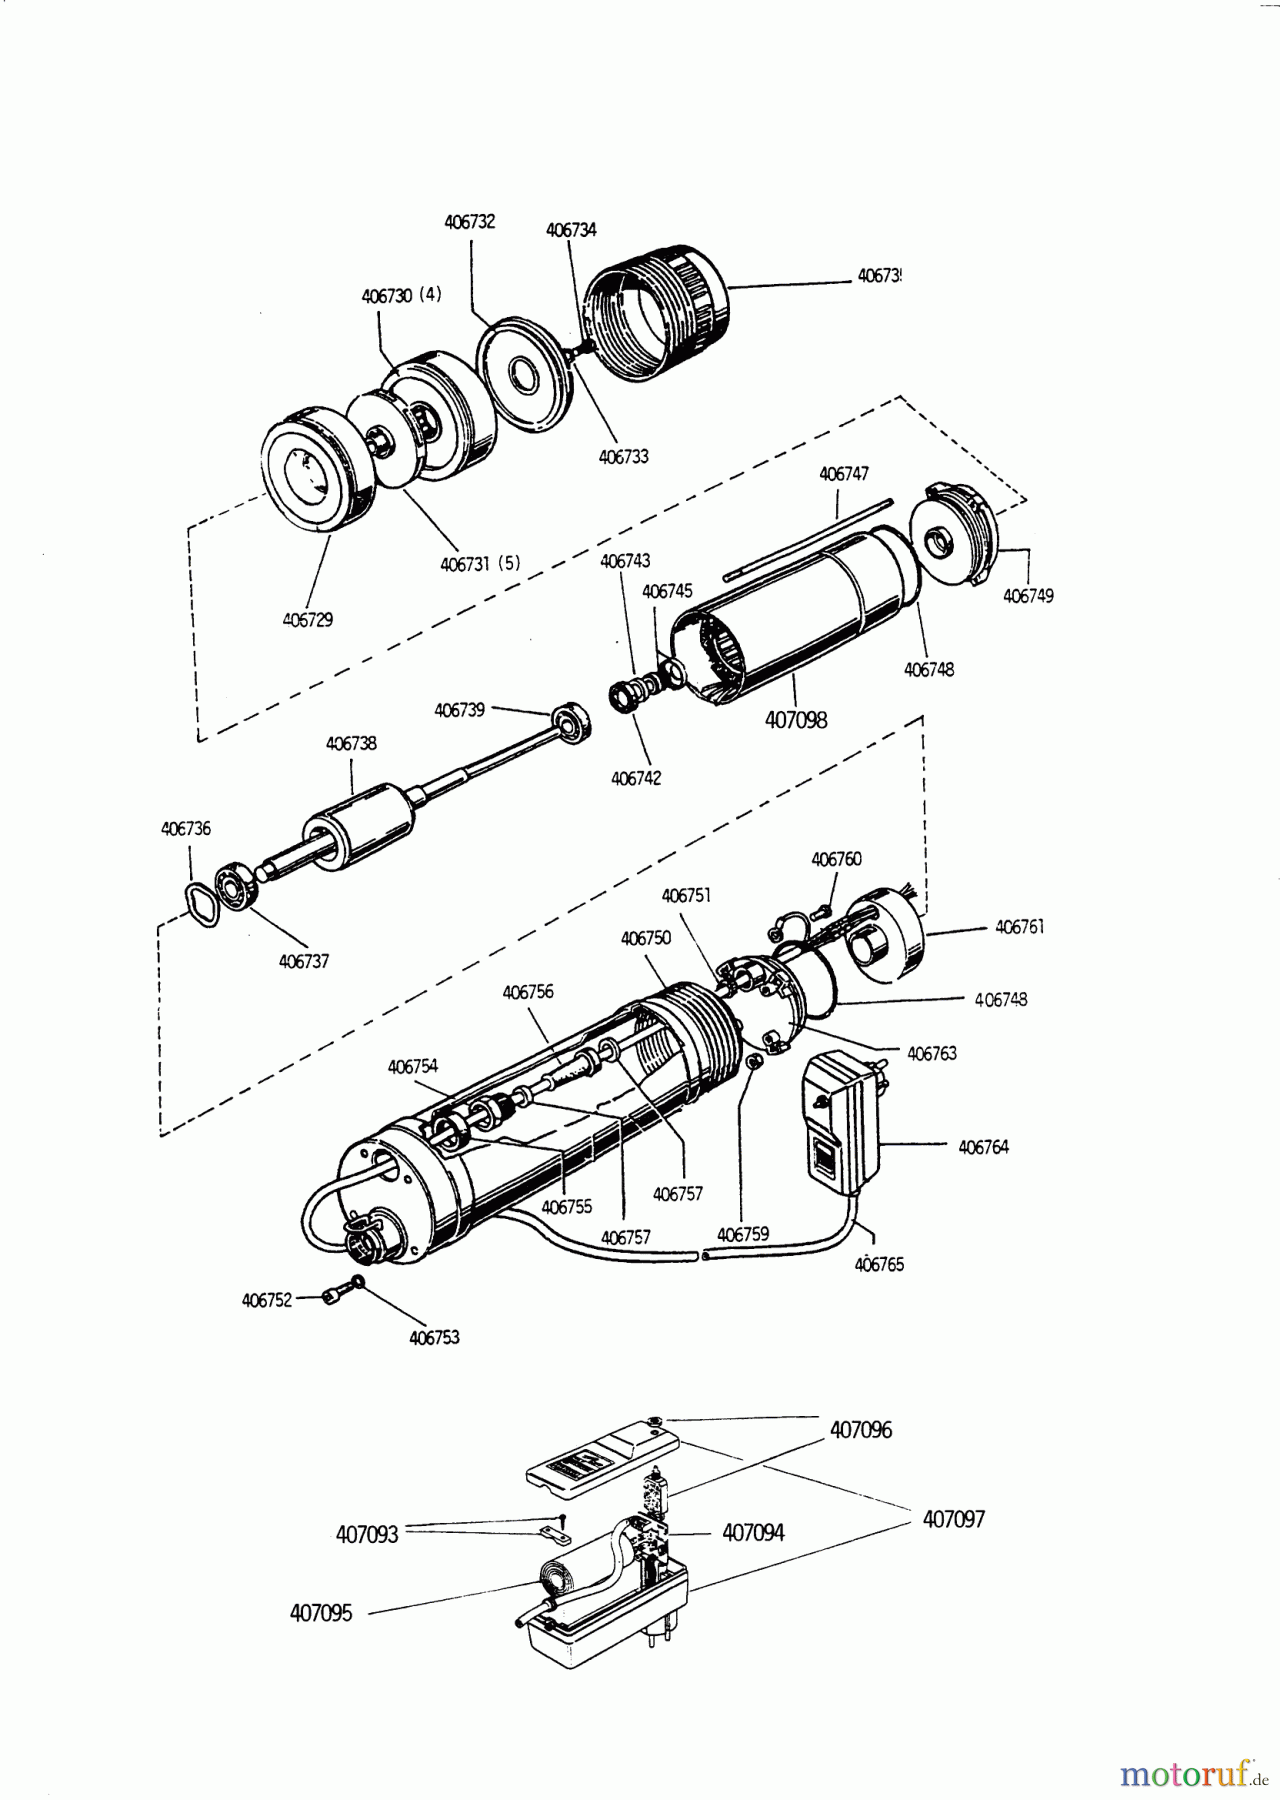  AL-KO Wassertechnik Tauchdruckpumpen TBM 1400-5  10/1994 Seite 1